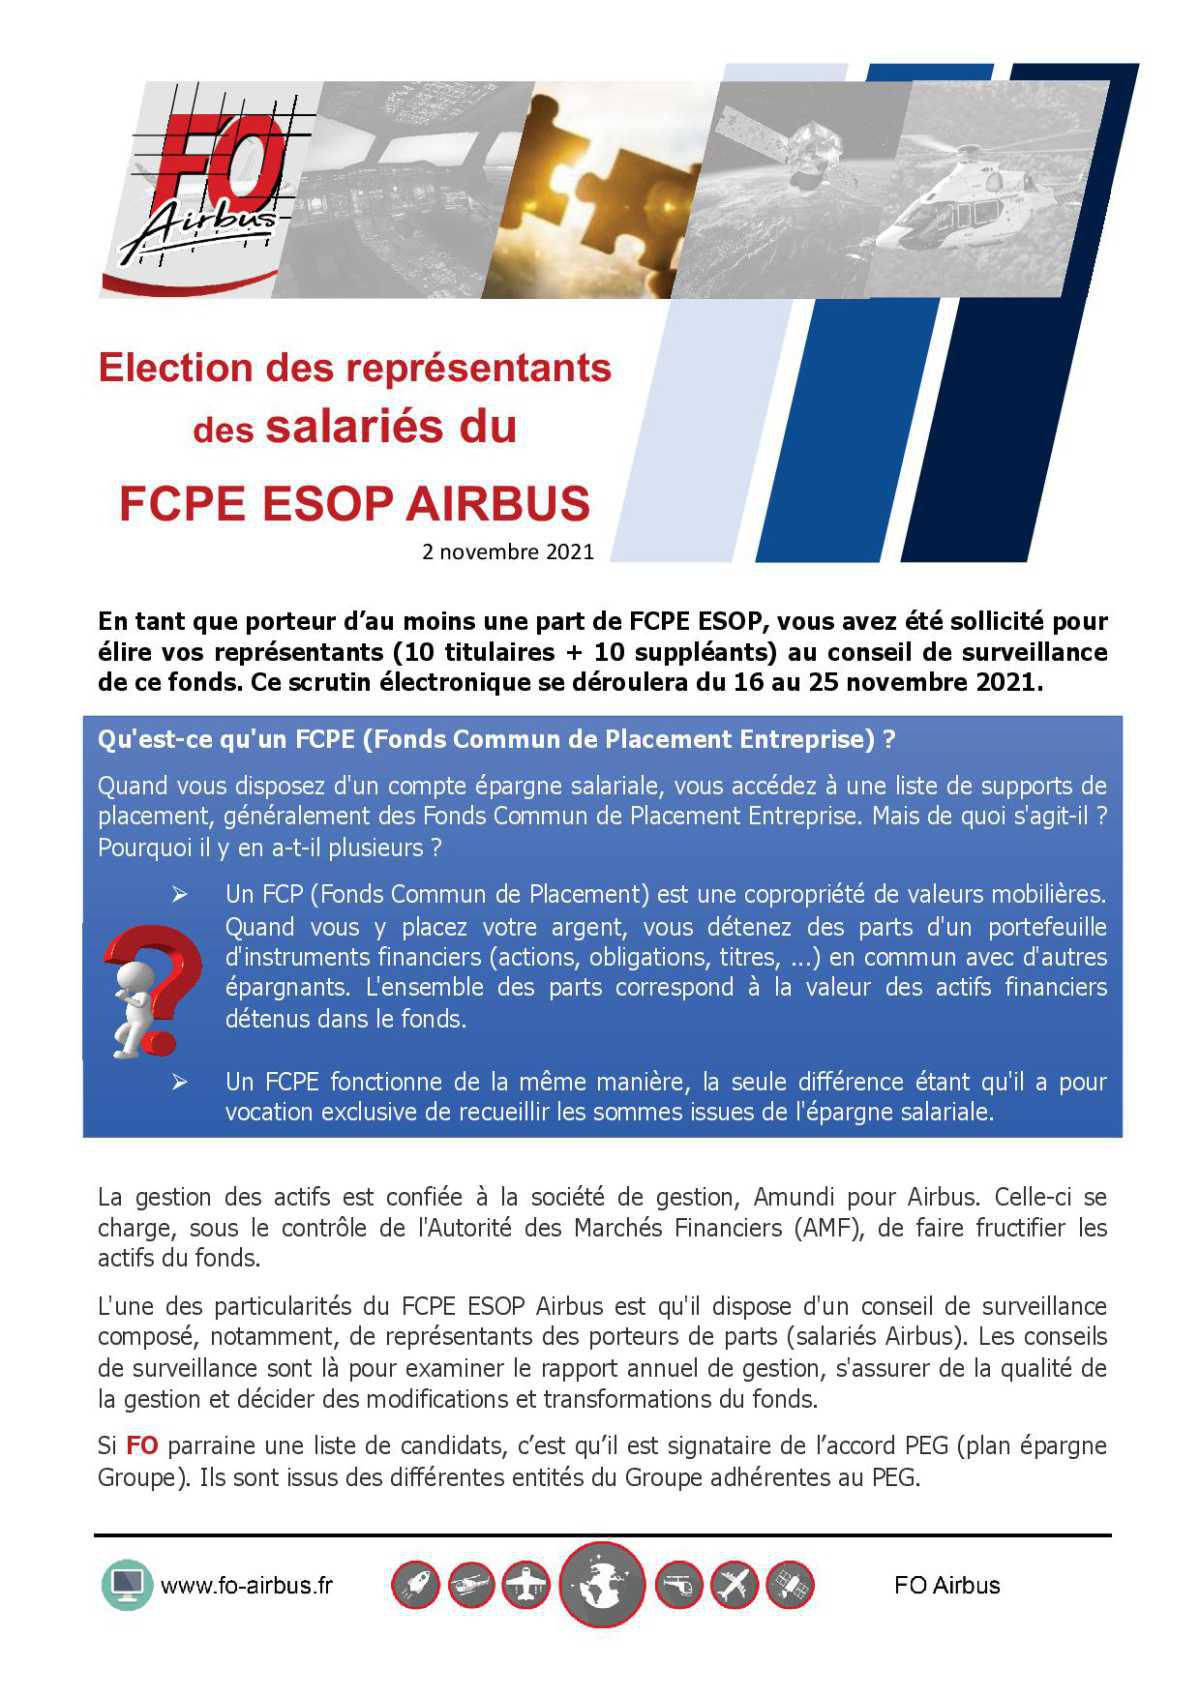 Election des représentants des salariés FCPE ESOP AIRBUS